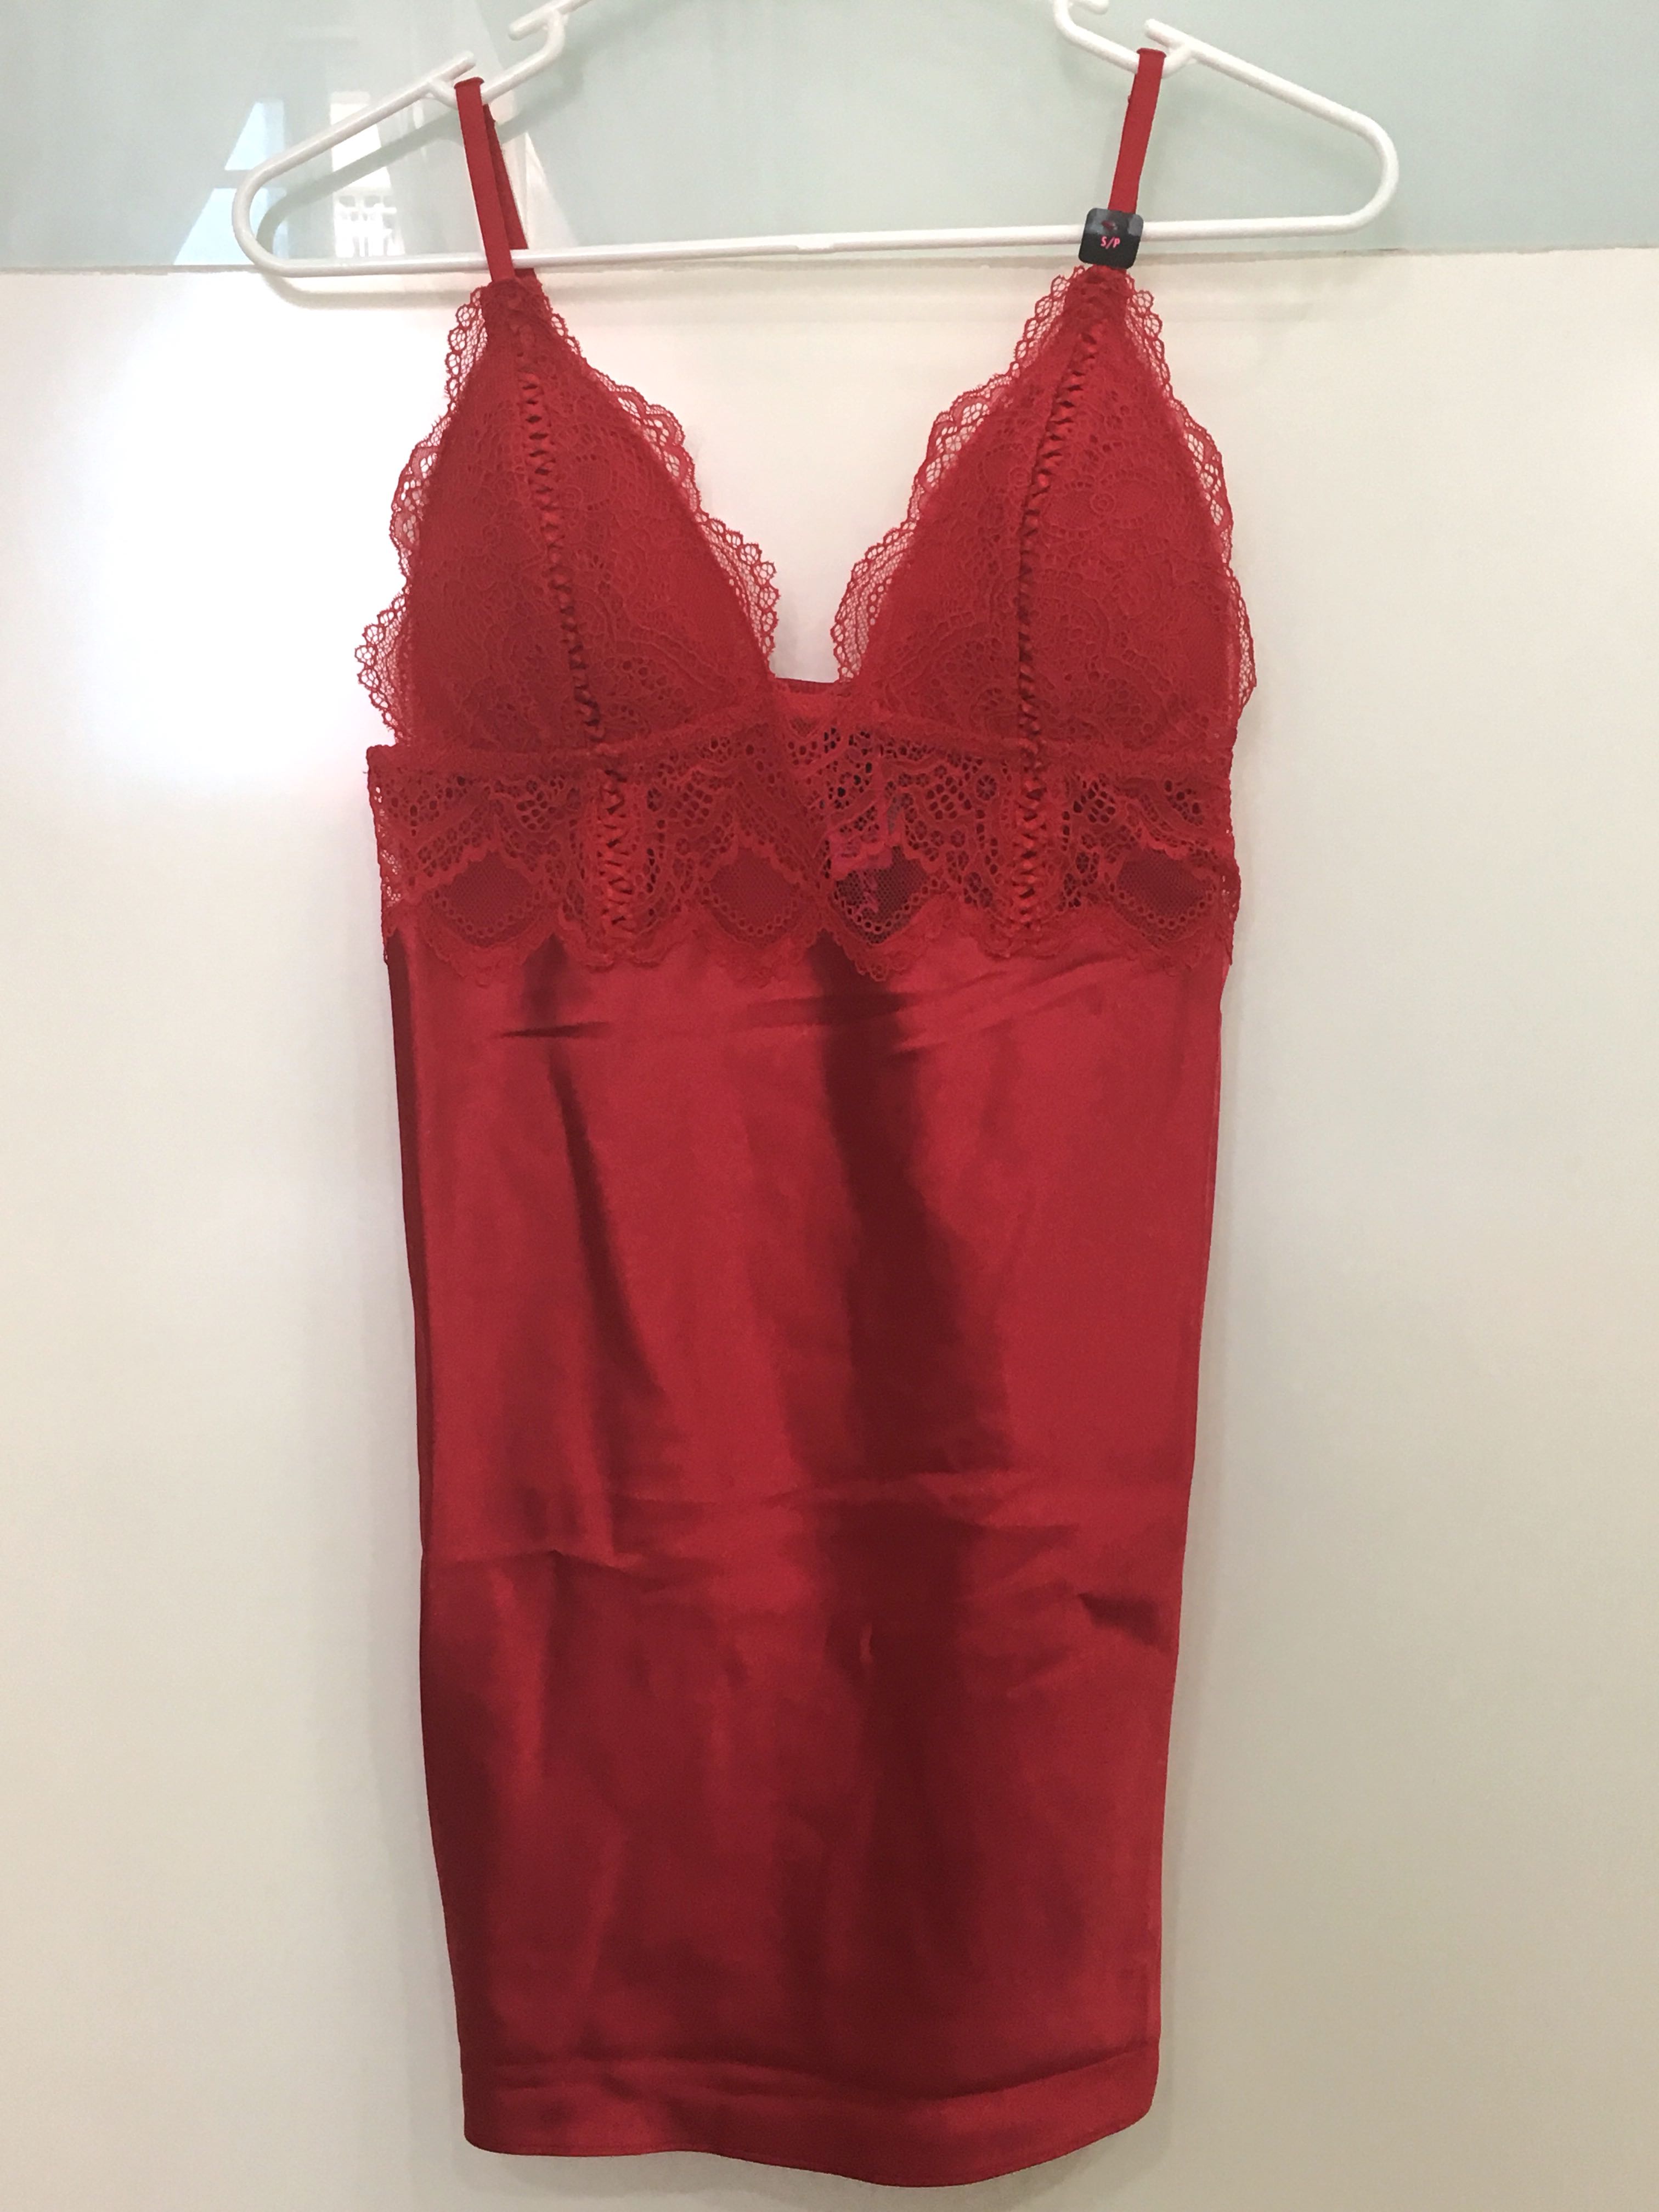 La Senza Red Lace Satin Chemise Lingerie Sleepwear, Women's